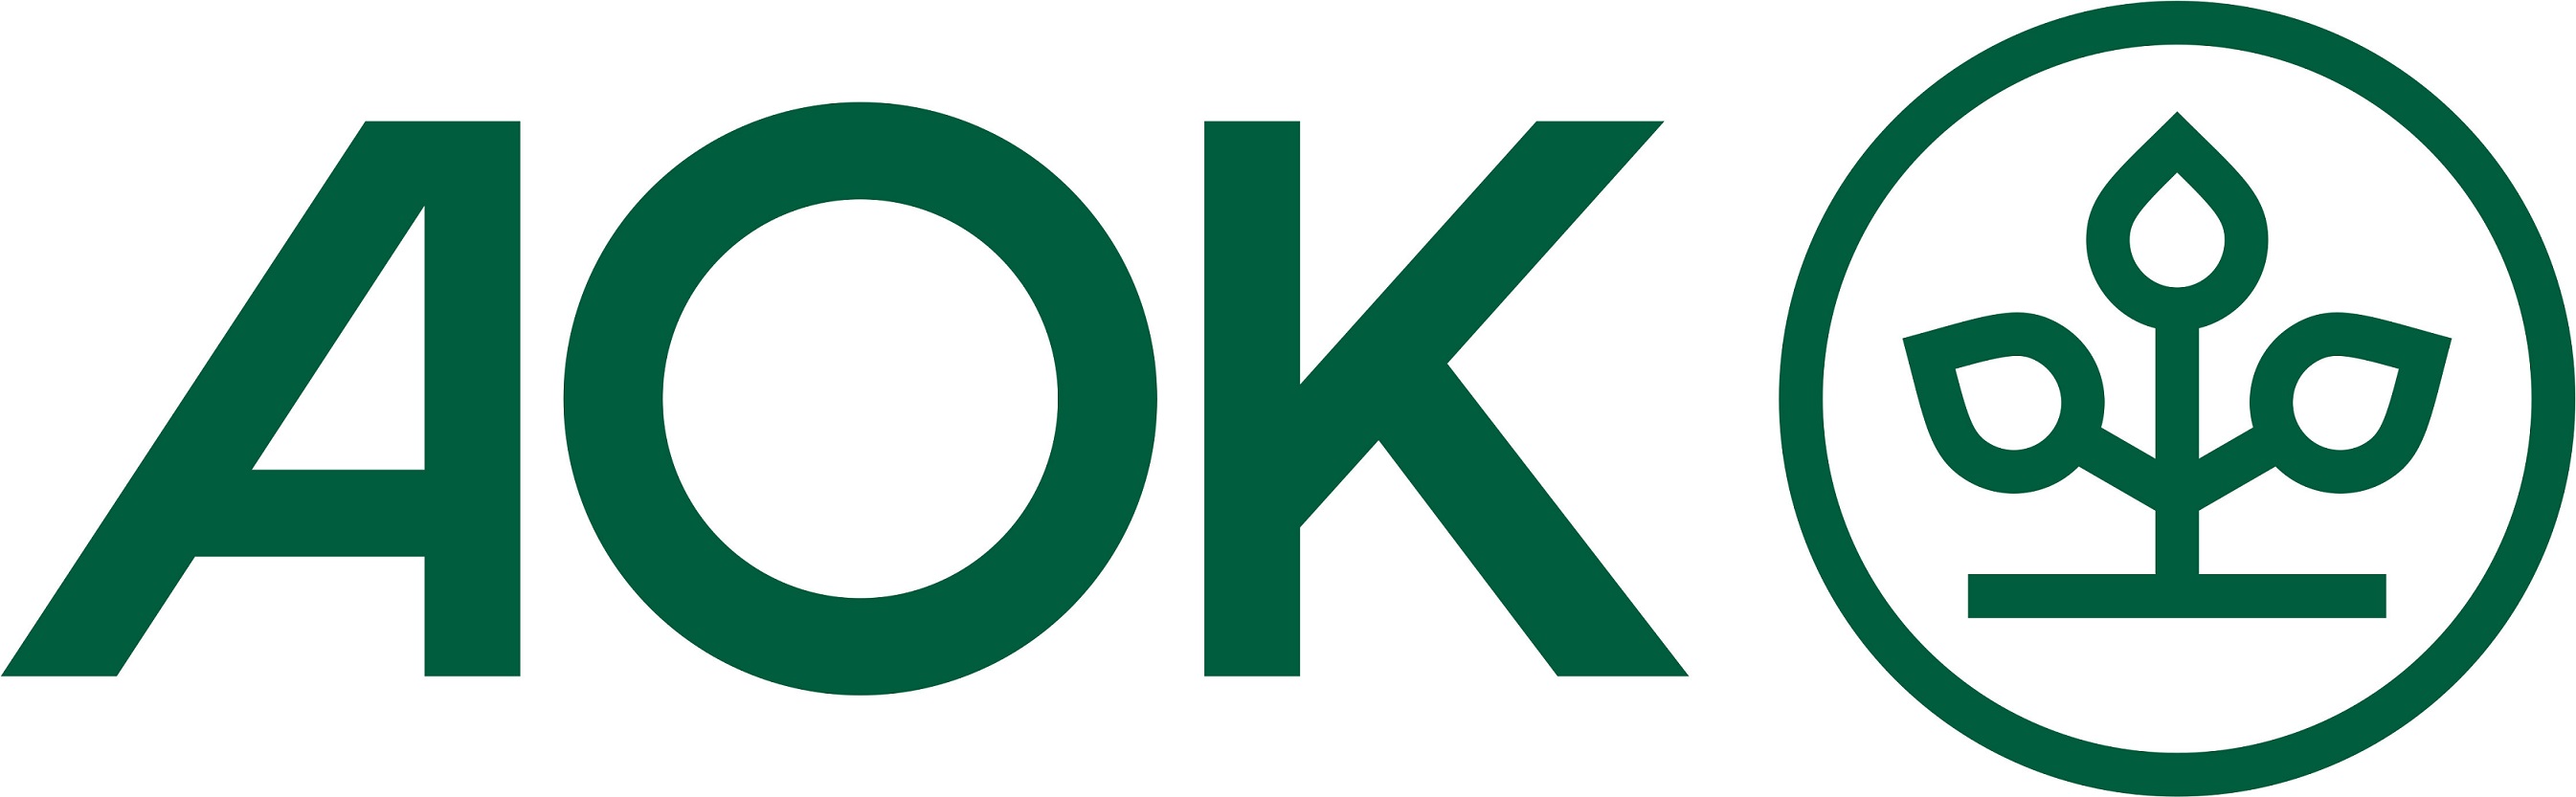 AOK Logo Horiz grune Schrift RGB